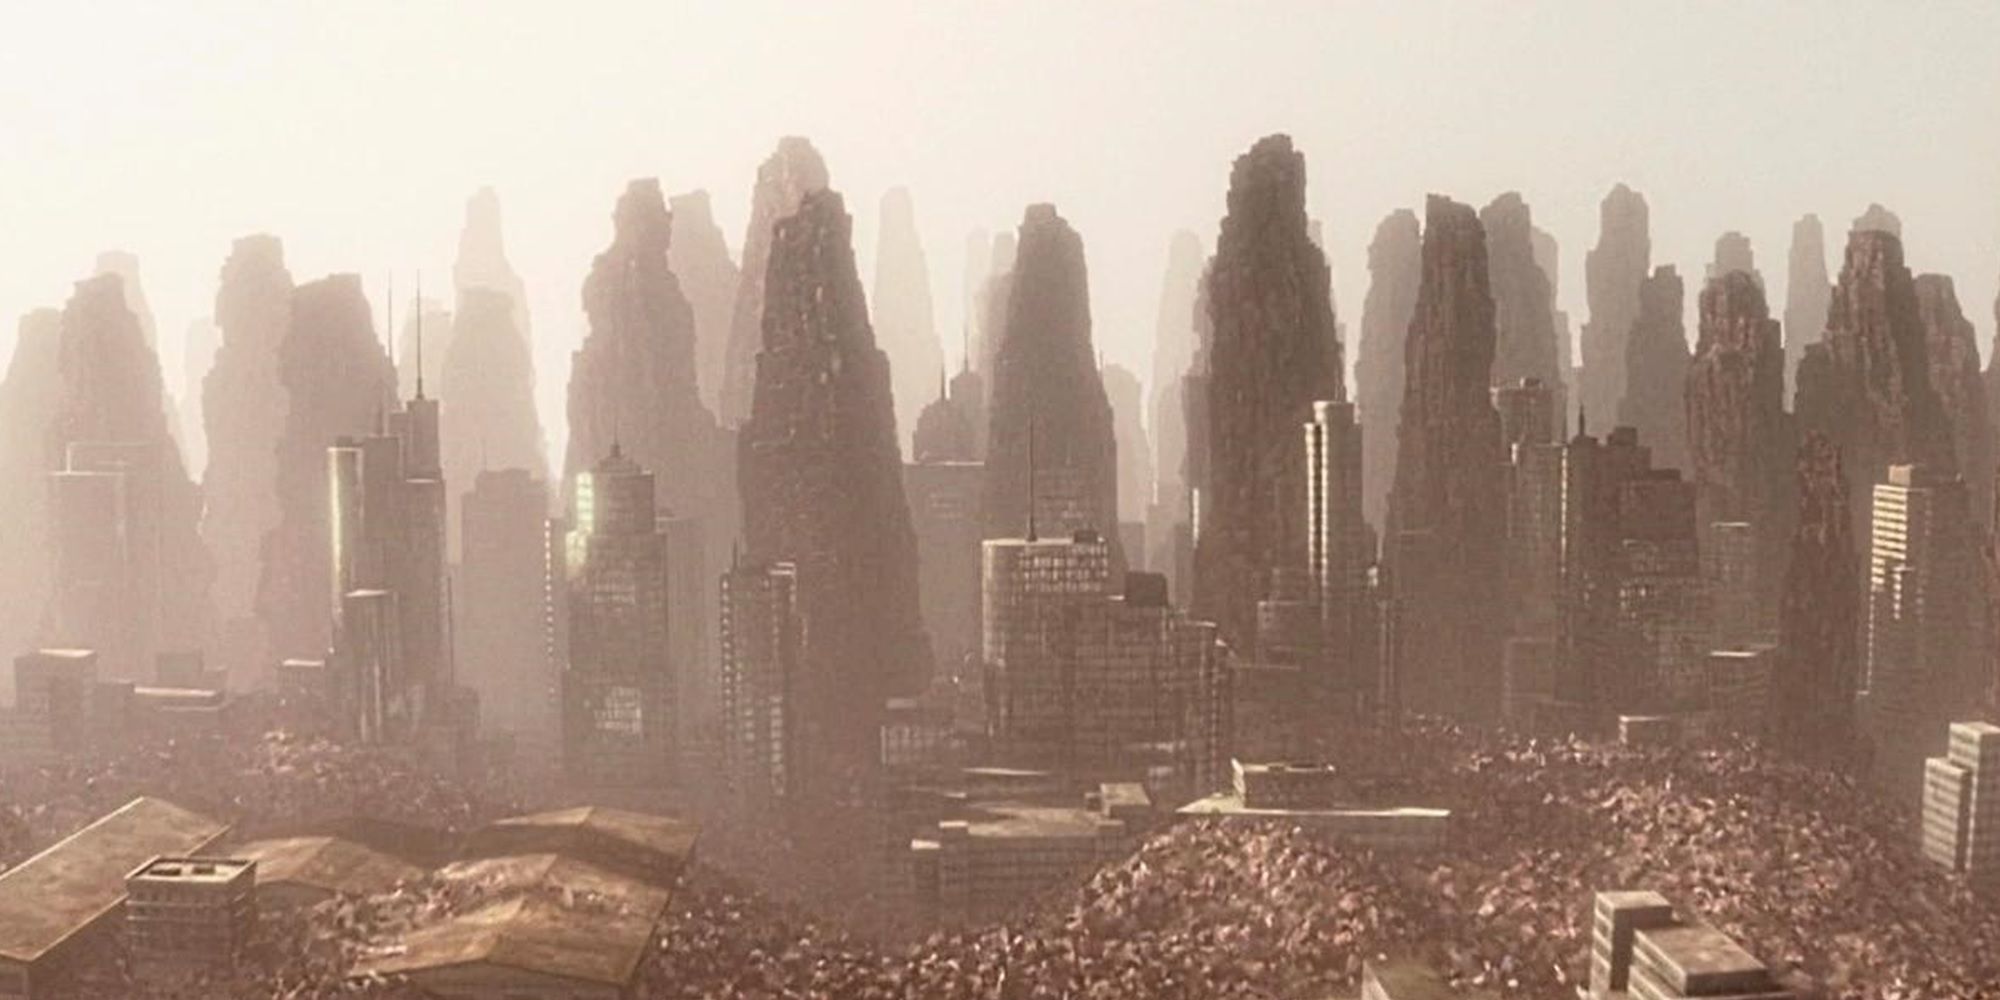 Trash skyscrapers in WALL-E